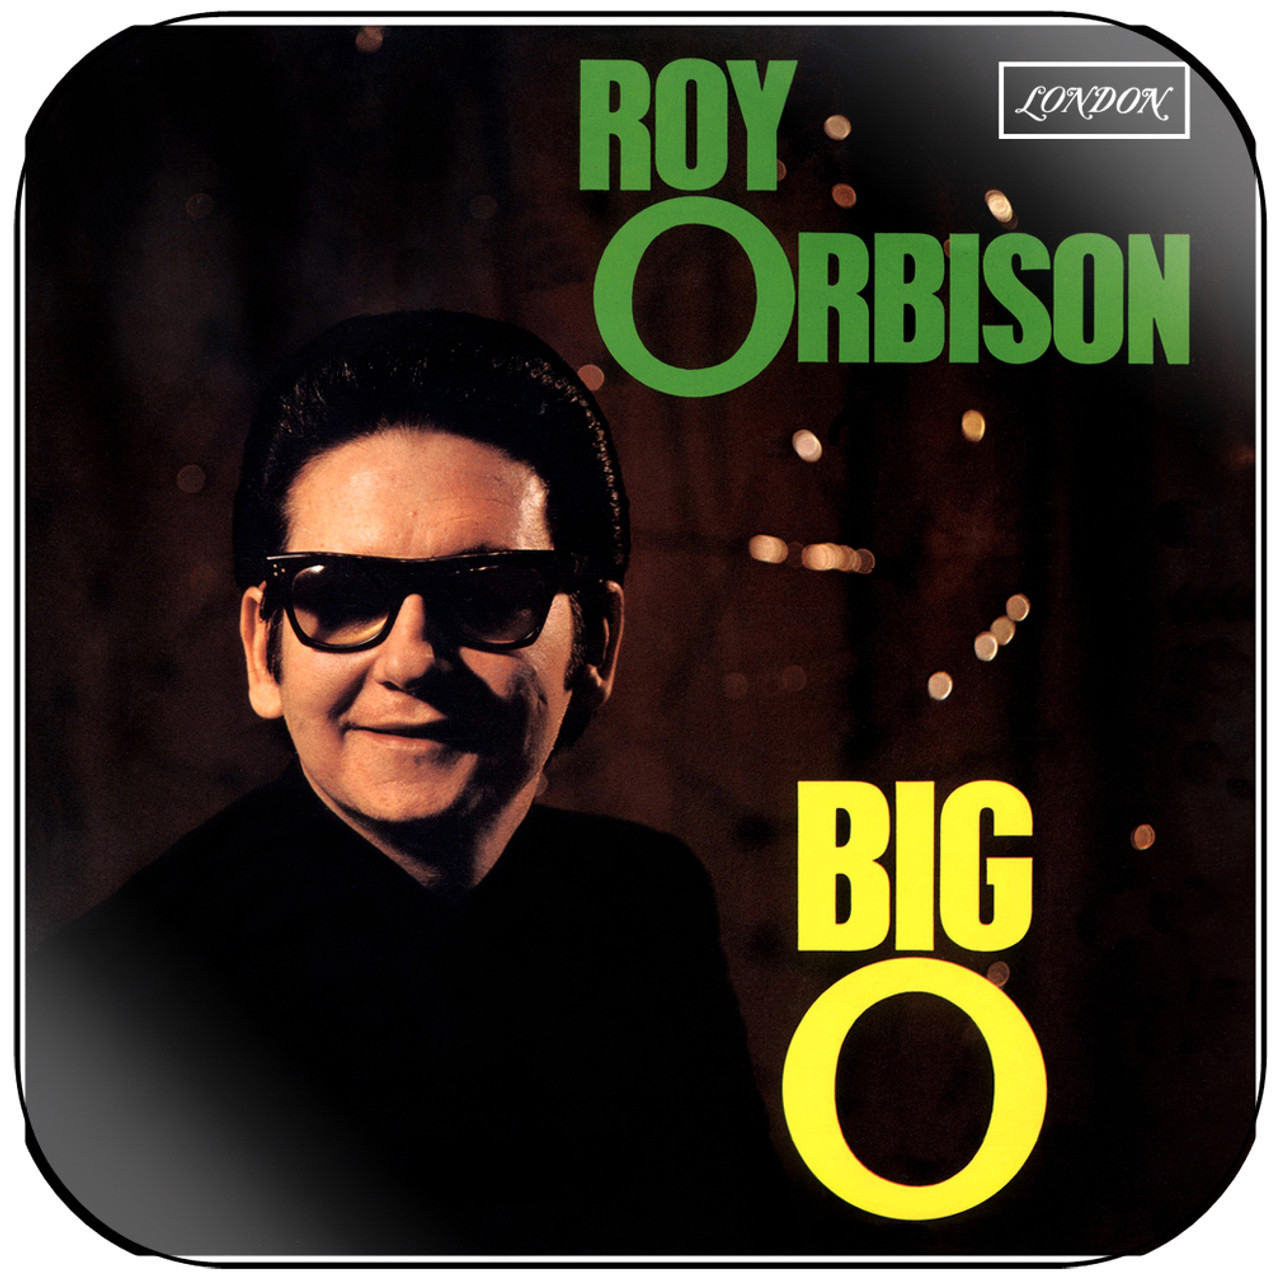 Roy Orbison - Big O Album Cover Sticker